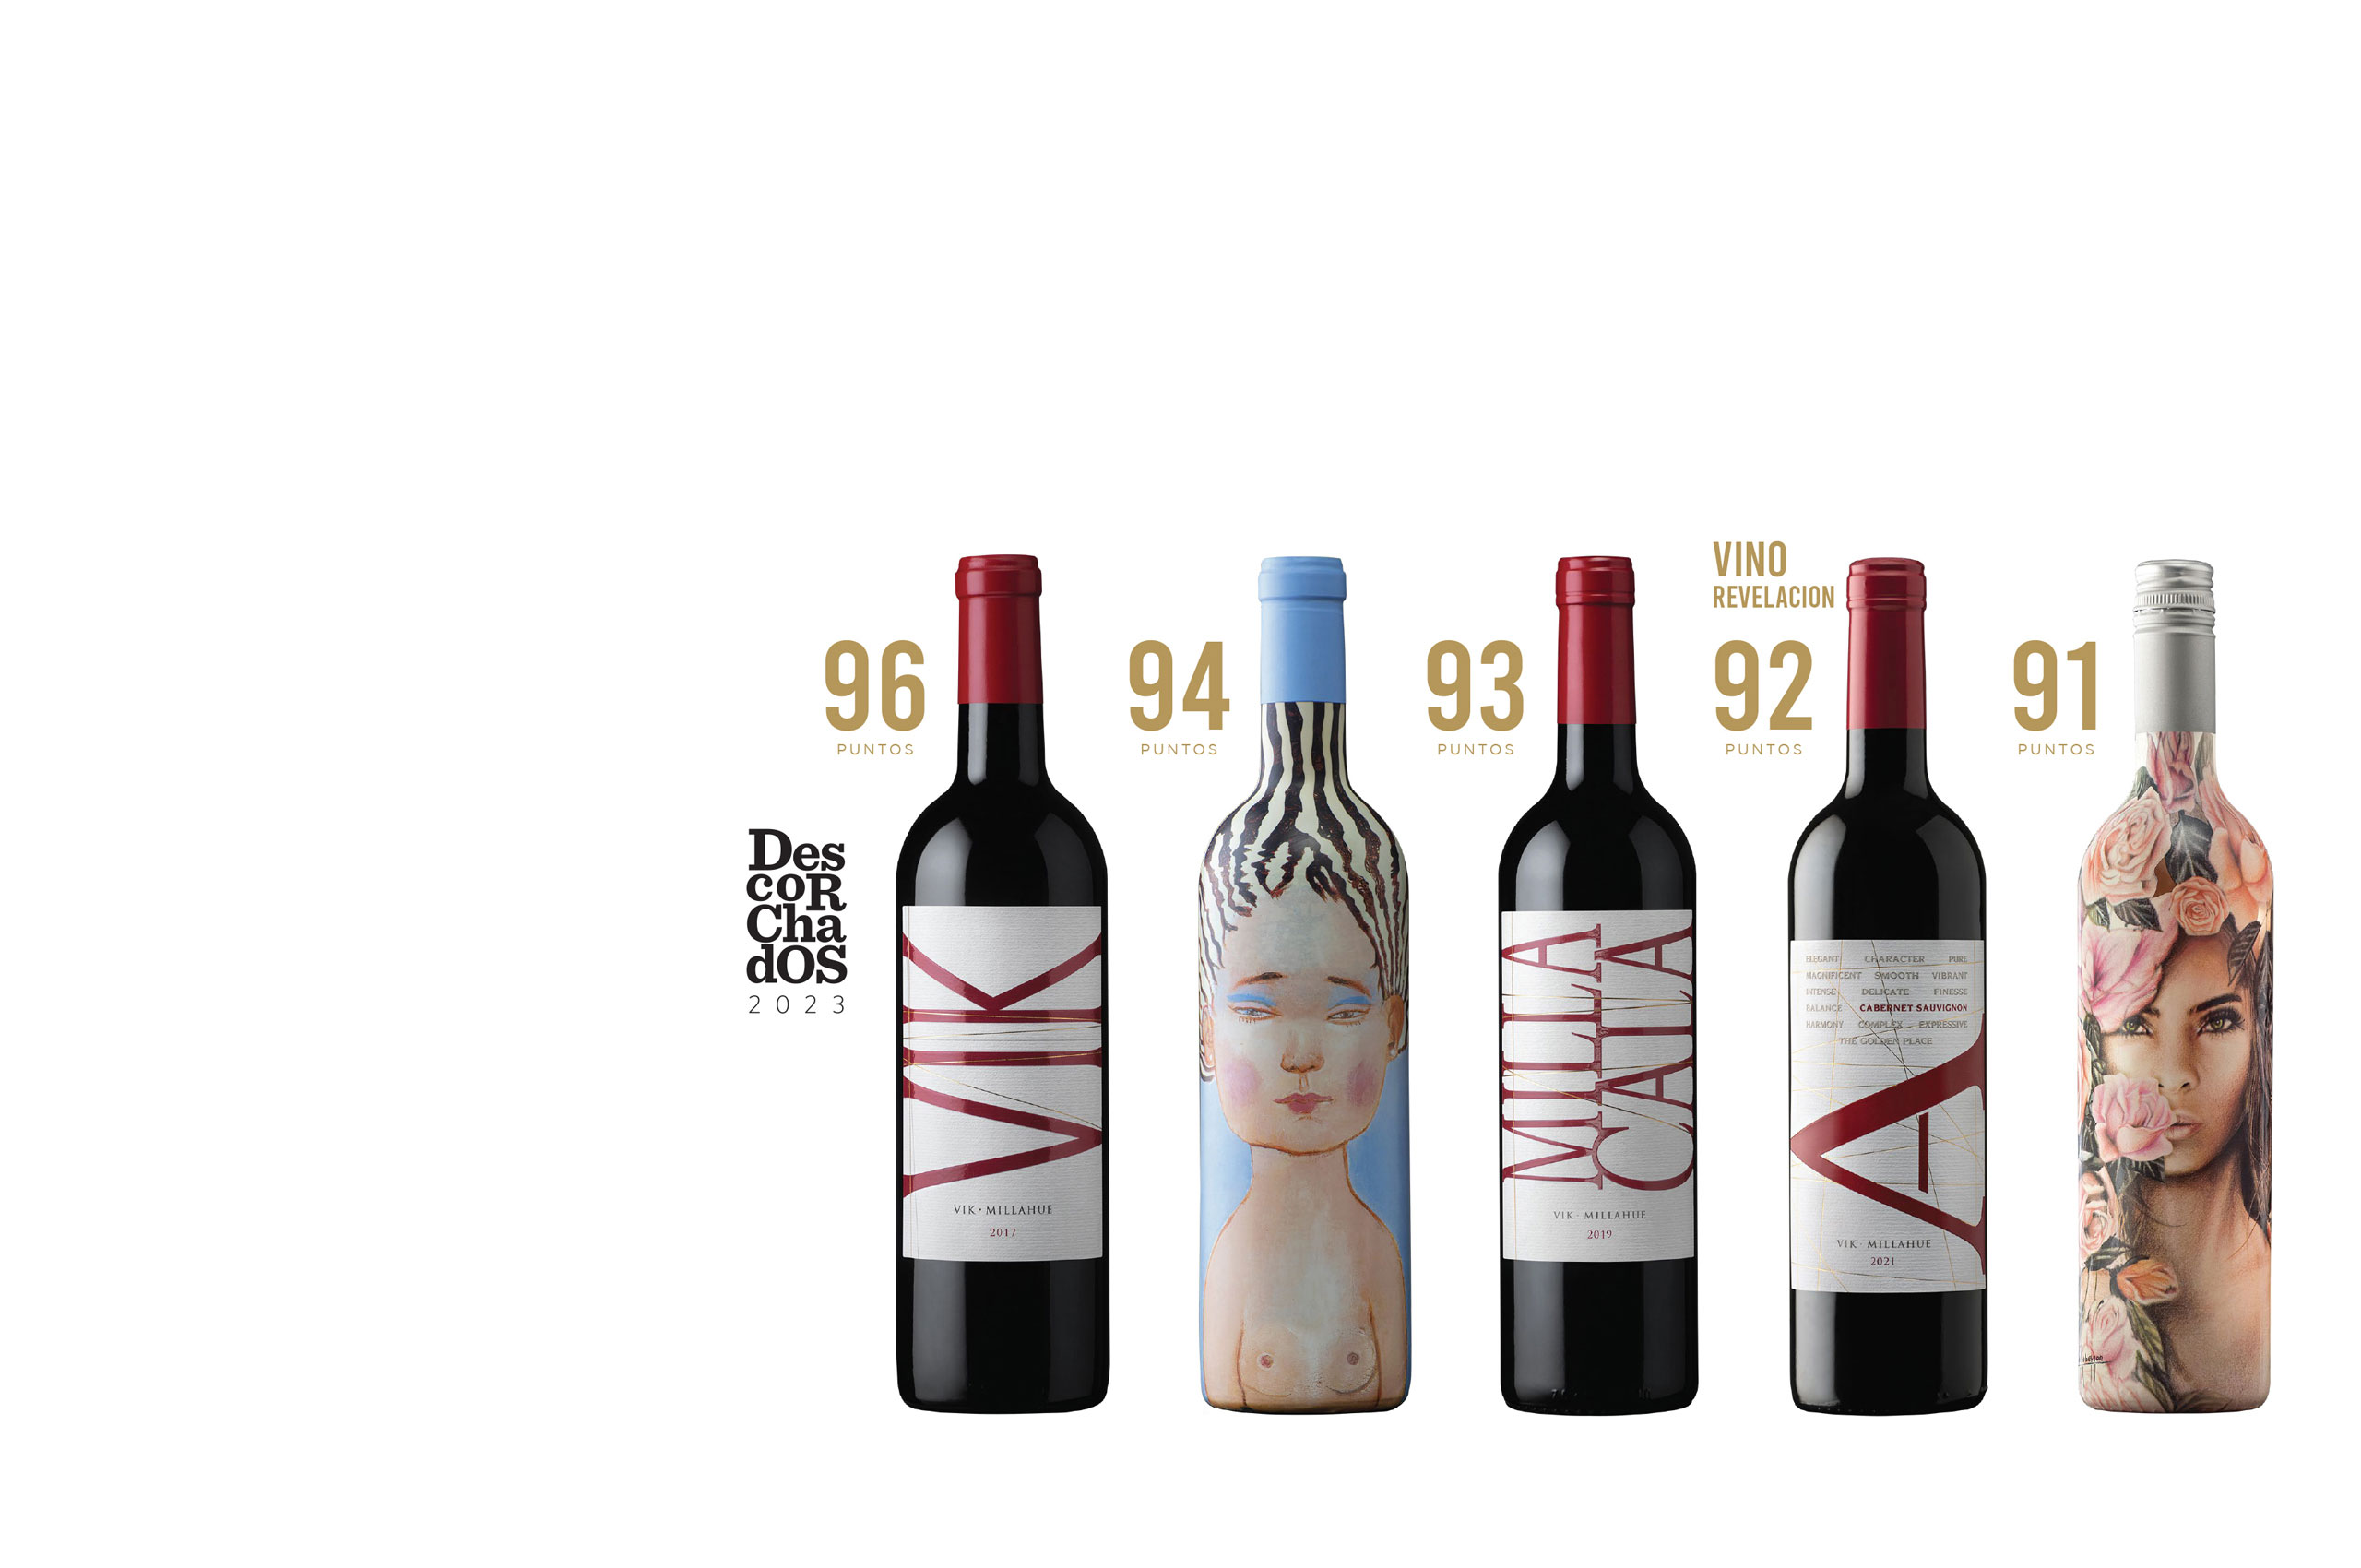 VIK 2017 é reconhecido com 96 pontos no guia de vinhos Descorchados 2023